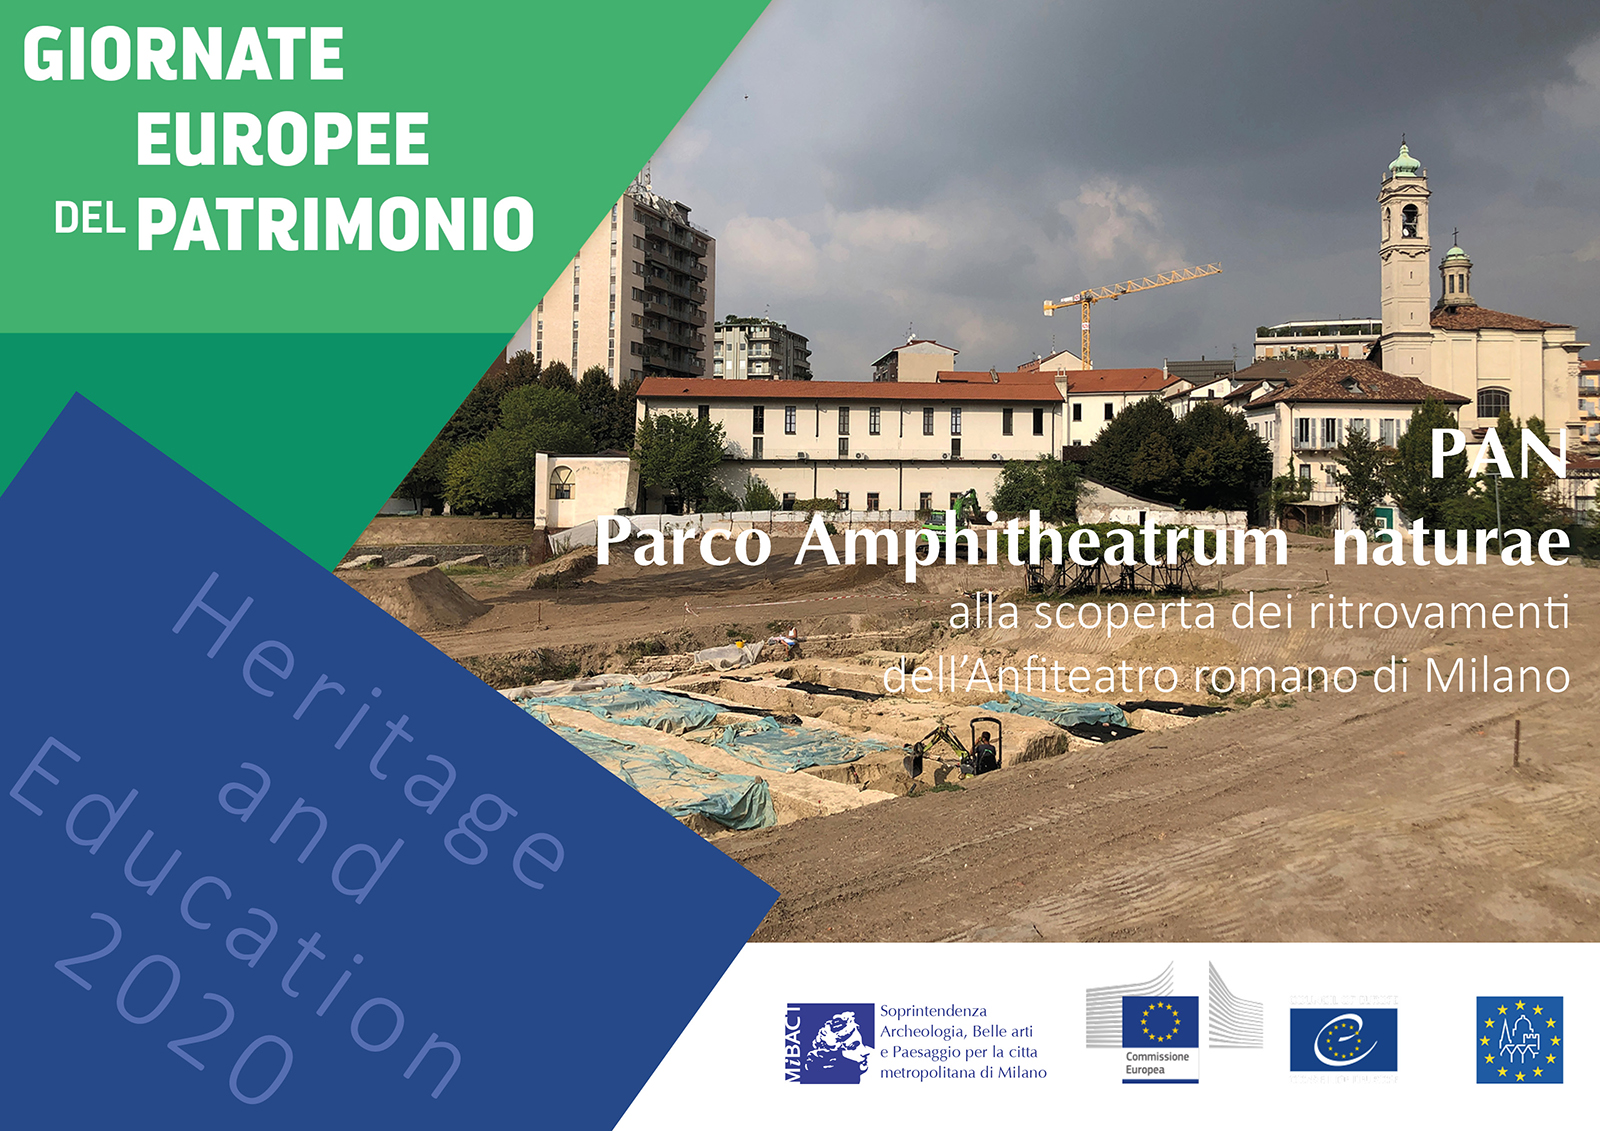 Giornate Europee del Patrimonio 2020 – APERTURA STRAORDINARIA DELL’ANFITEATRO ROMANO – Rassegna stampa